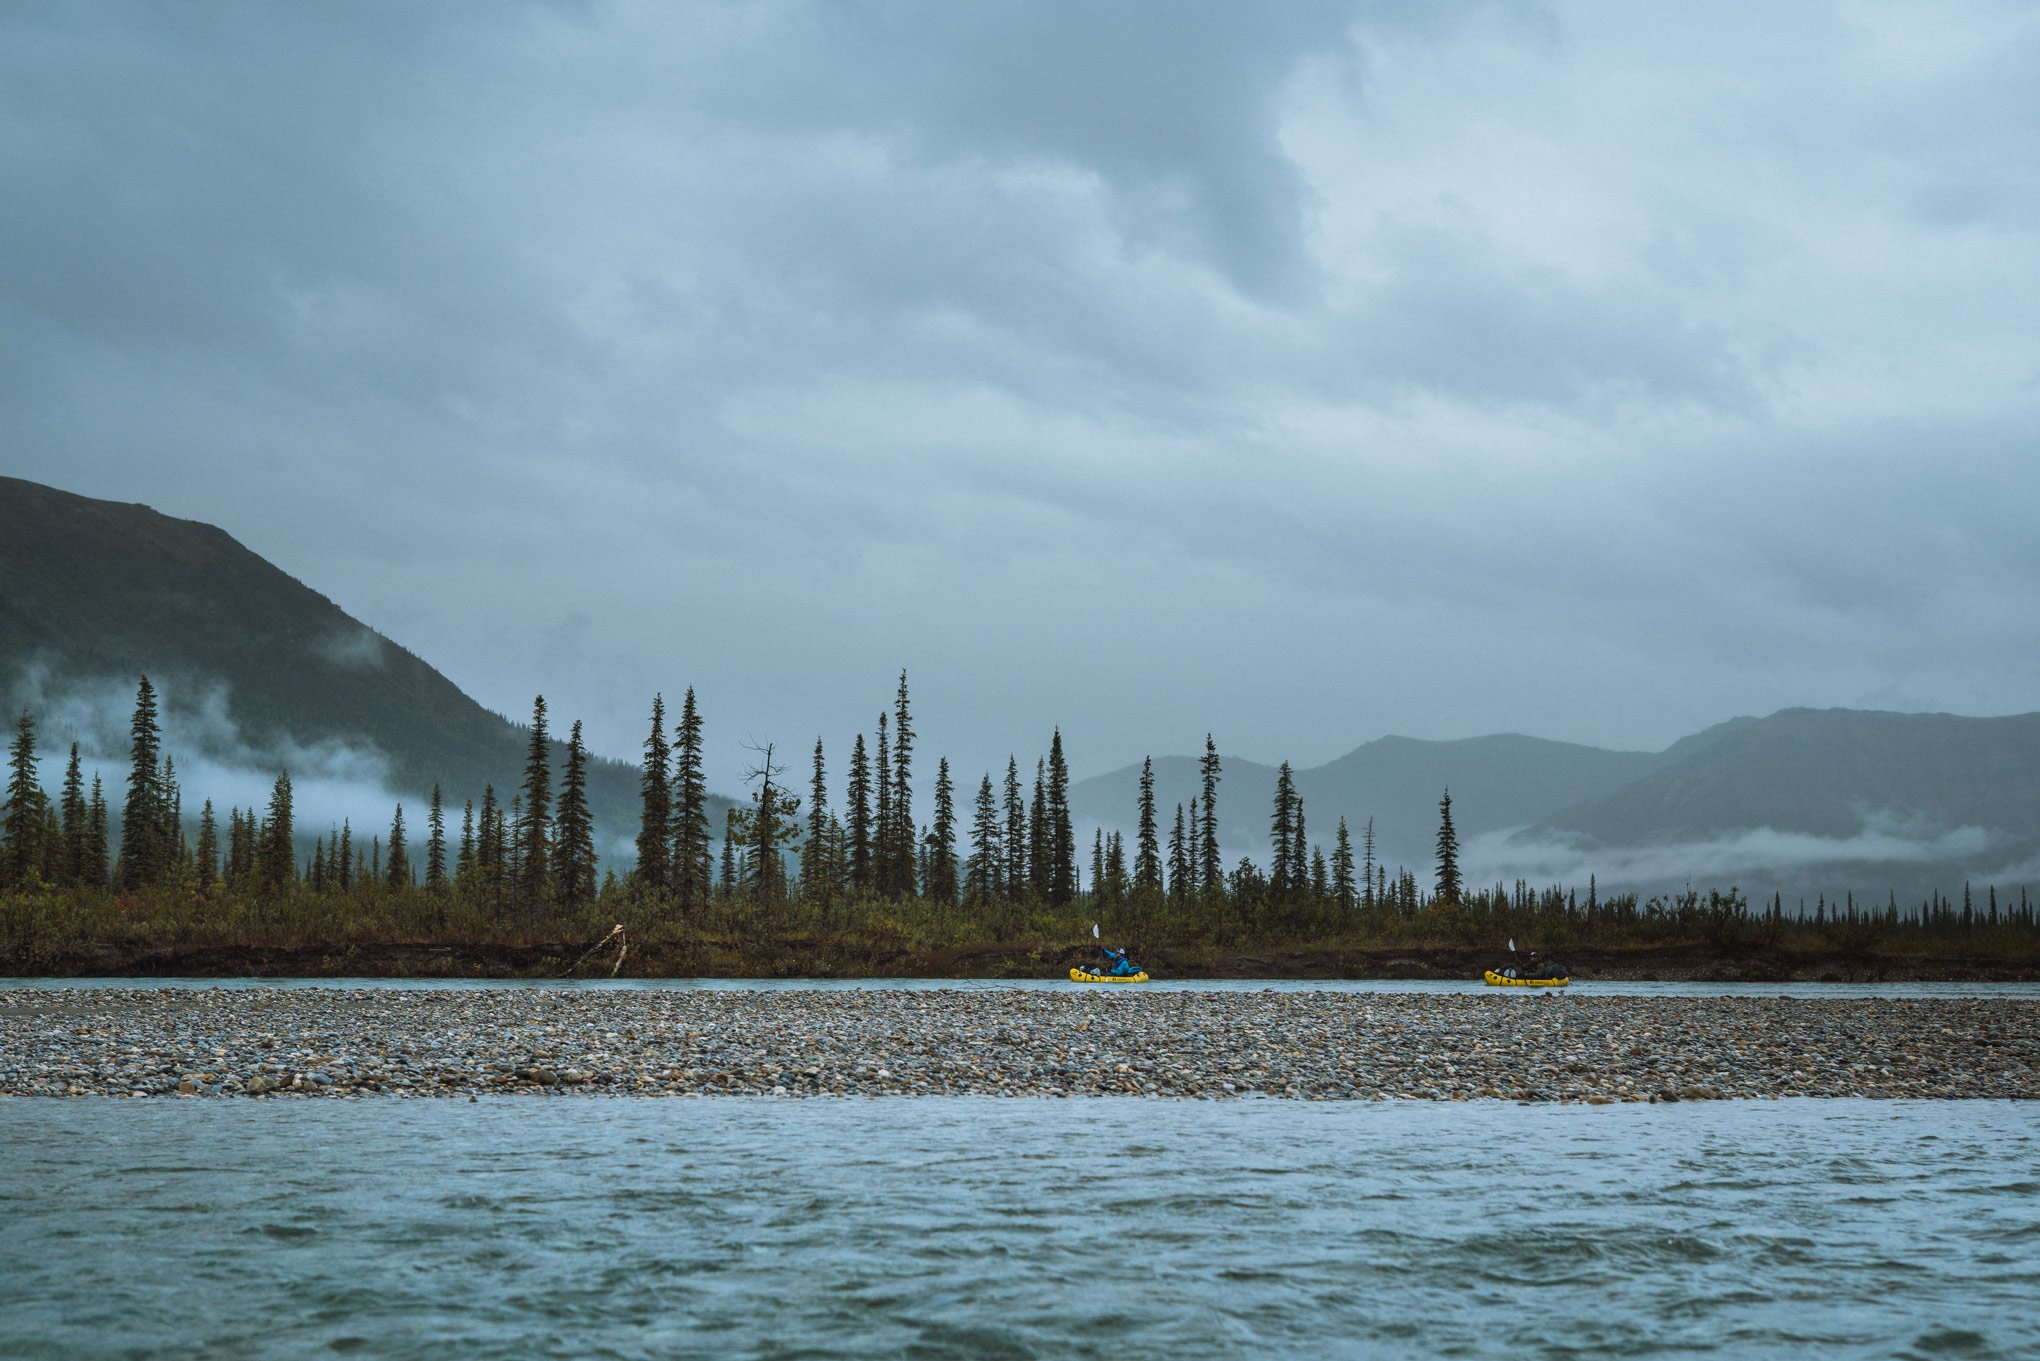 Packrafting-Alaska-ambler-river-Samuel-martin-31.jpg